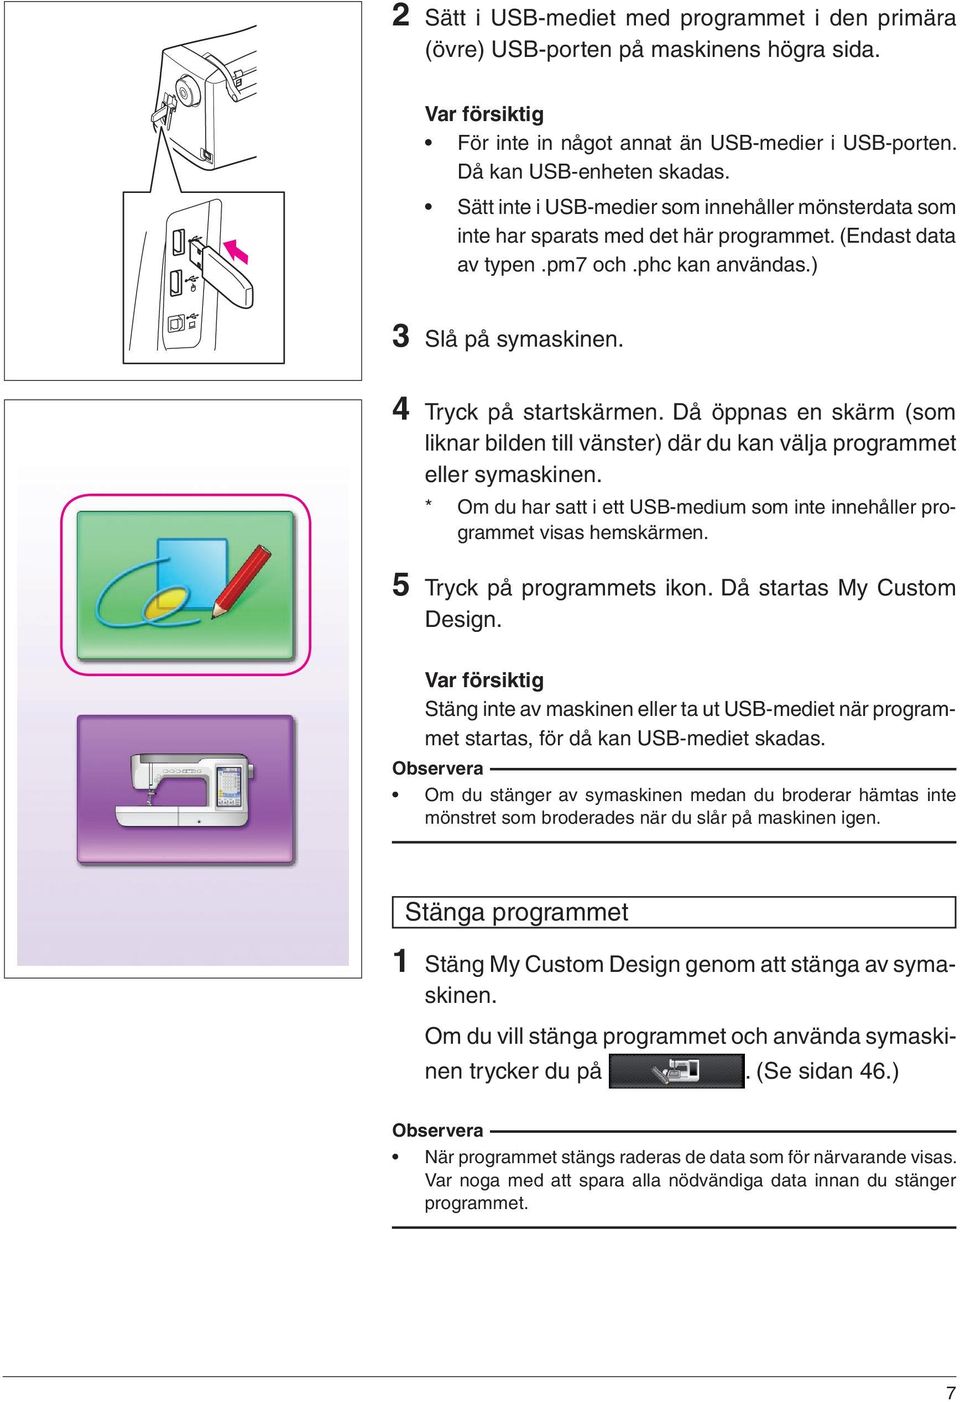 Då öppnas en skärm (som liknar bilden till vänster) där du kan välja programmet eller symaskinen. * Om du har satt i ett USB-medium som inte innehåller programmet visas hemskärmen.